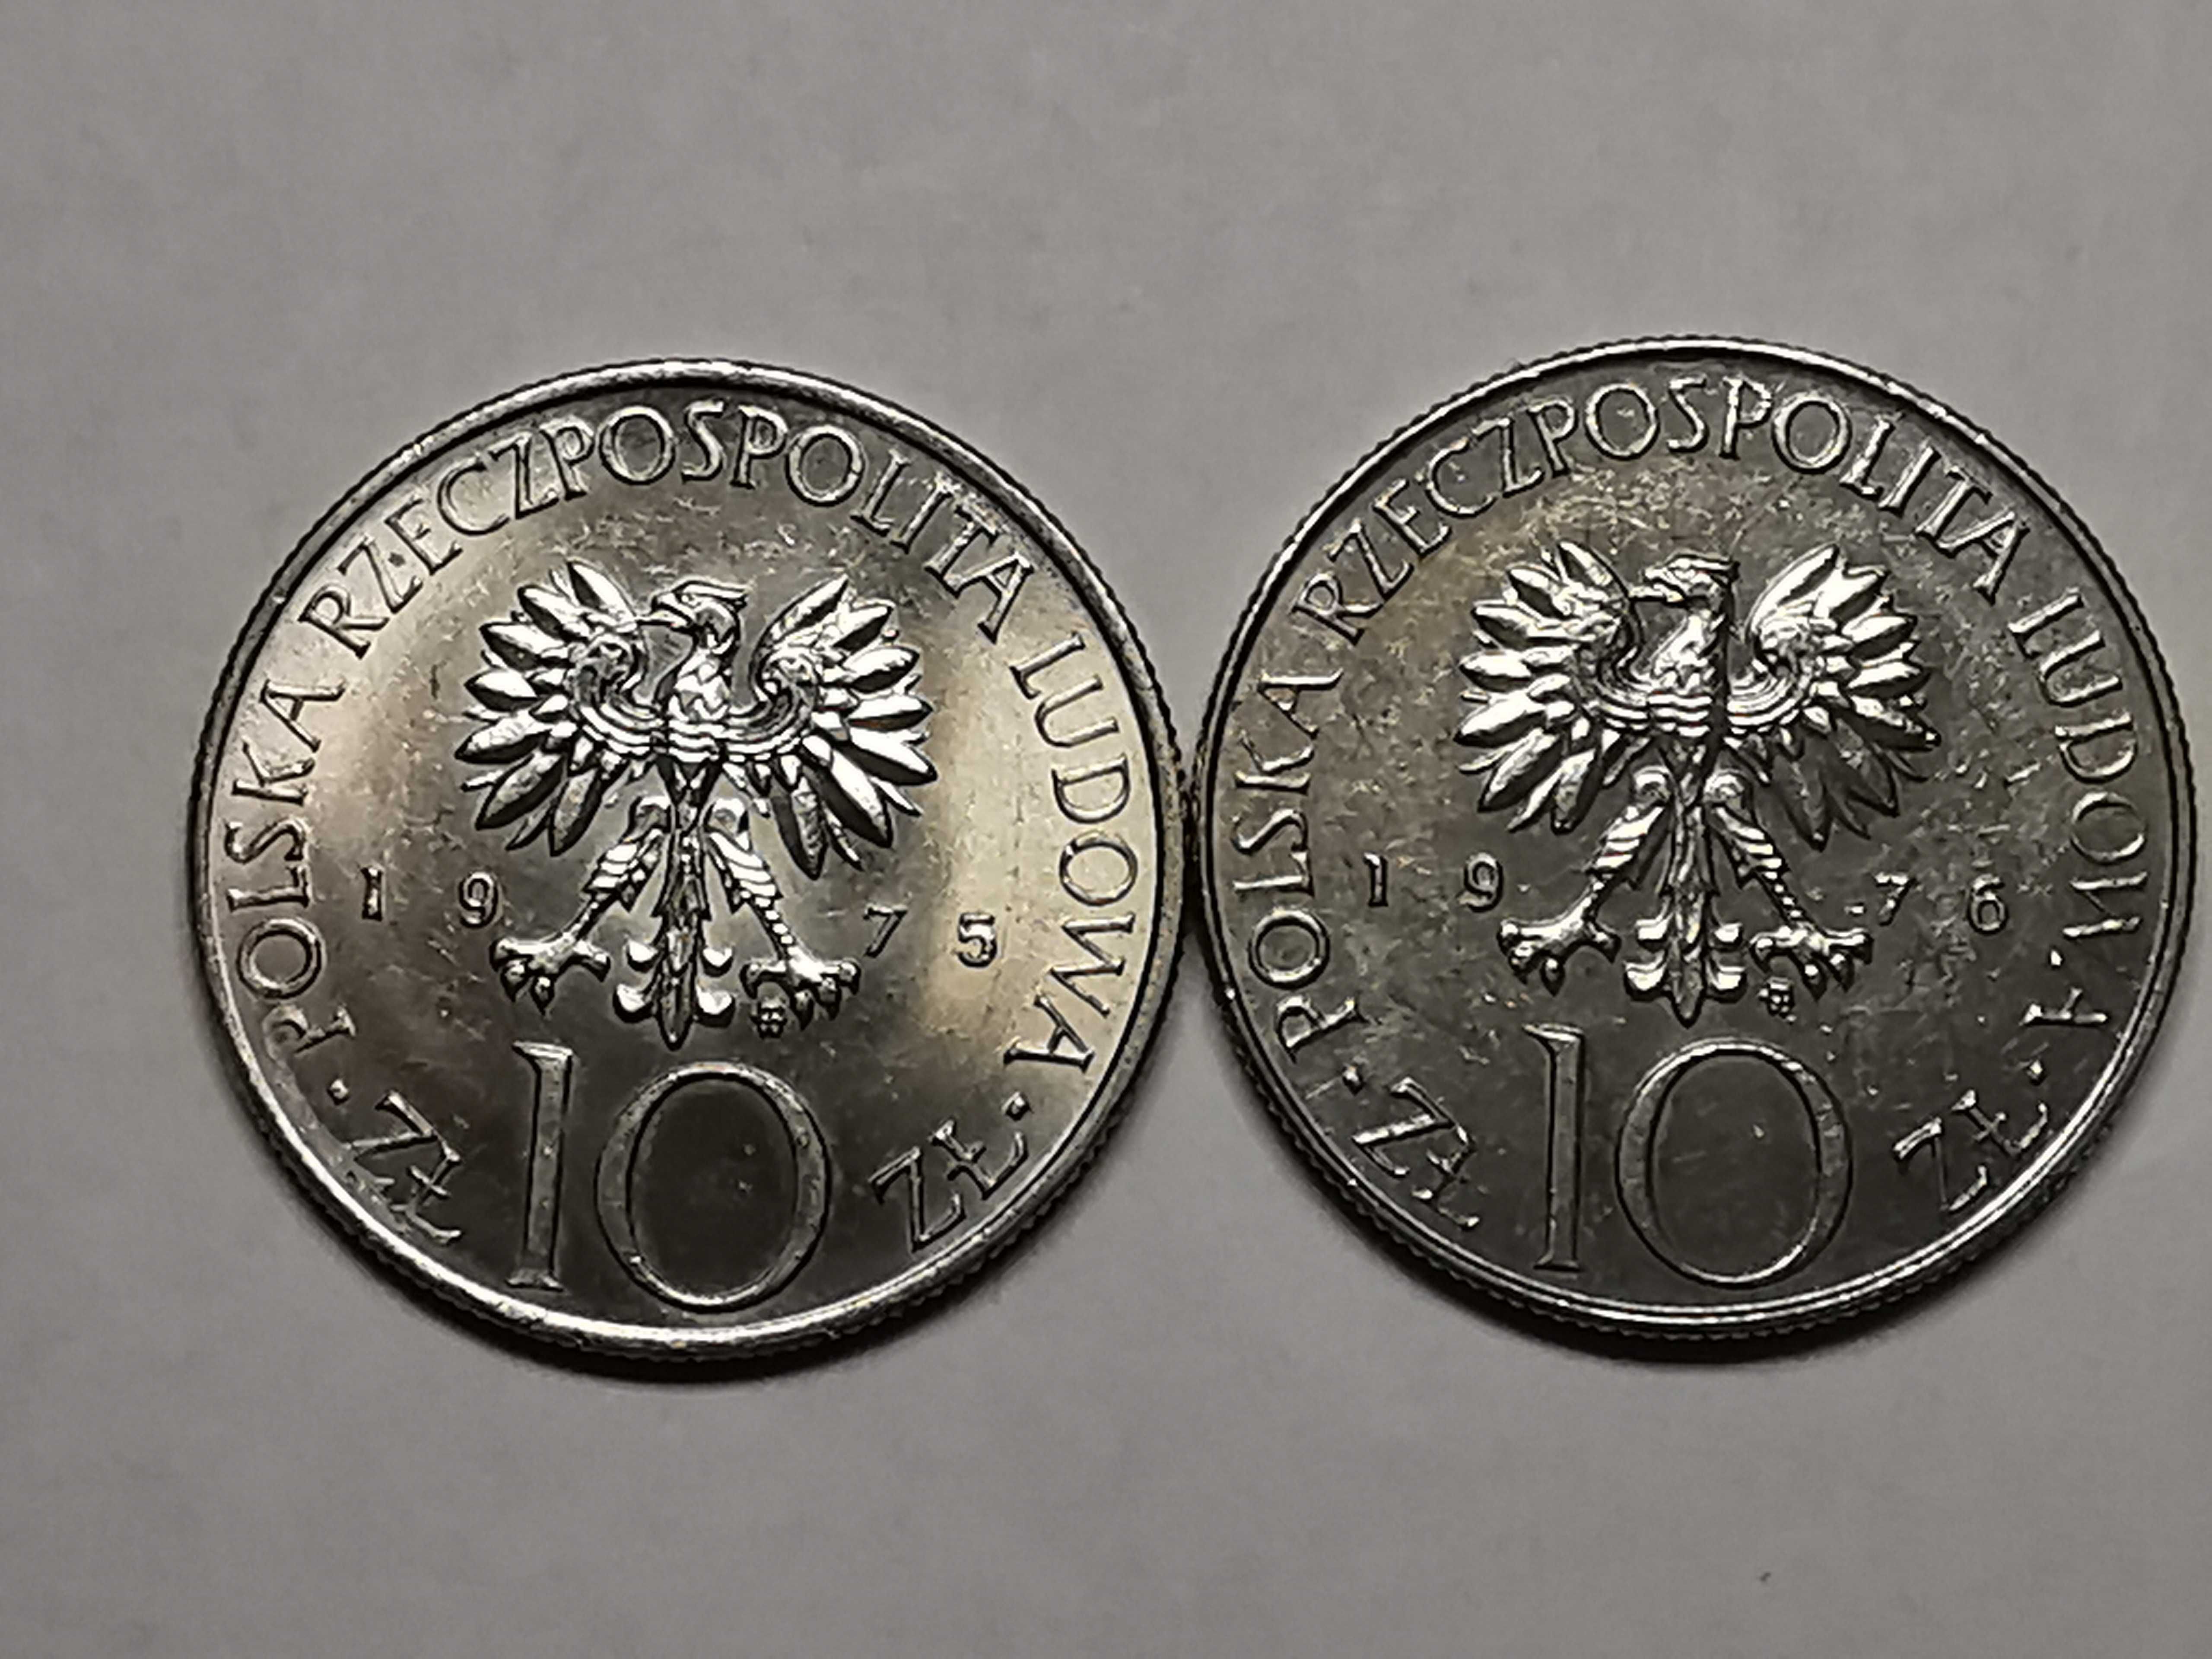 Moneta Adam Mickiewicz 10 zł od 1975r do 1976r.